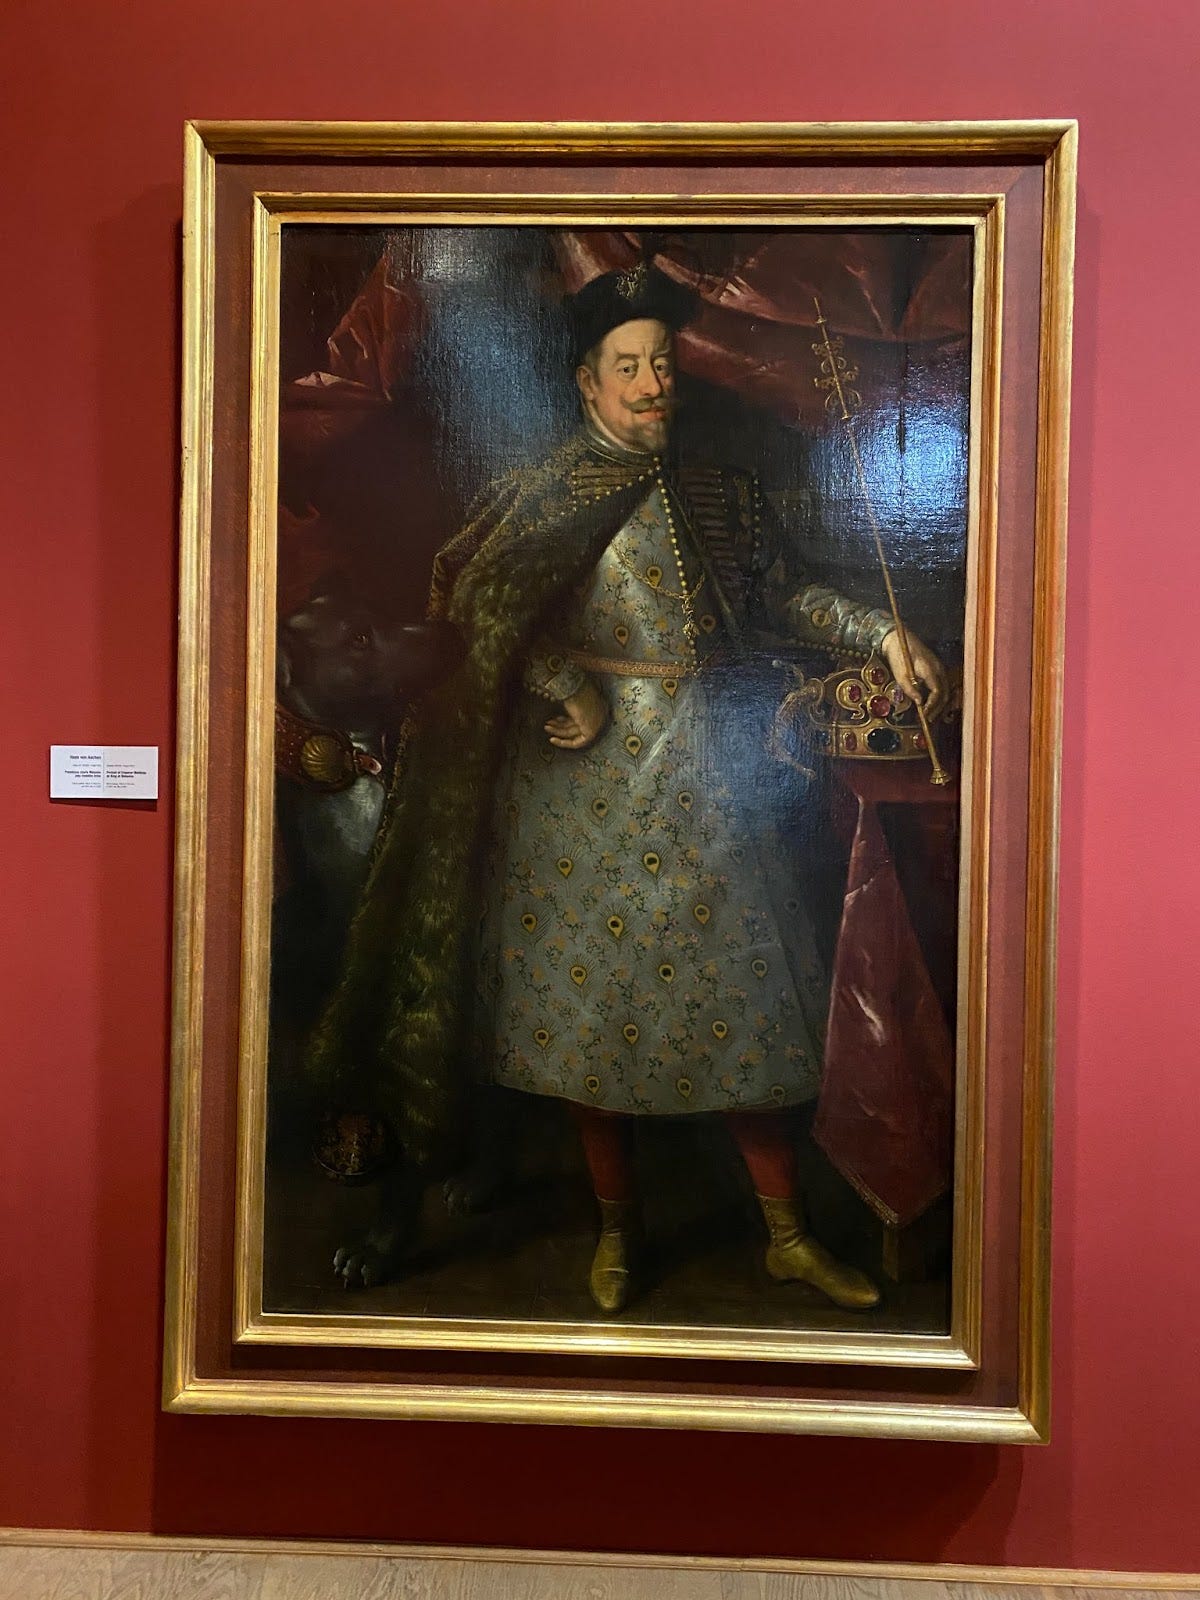 [Emperor Matthias as King of Bohemia - Hans von Aachen - 1551/52]